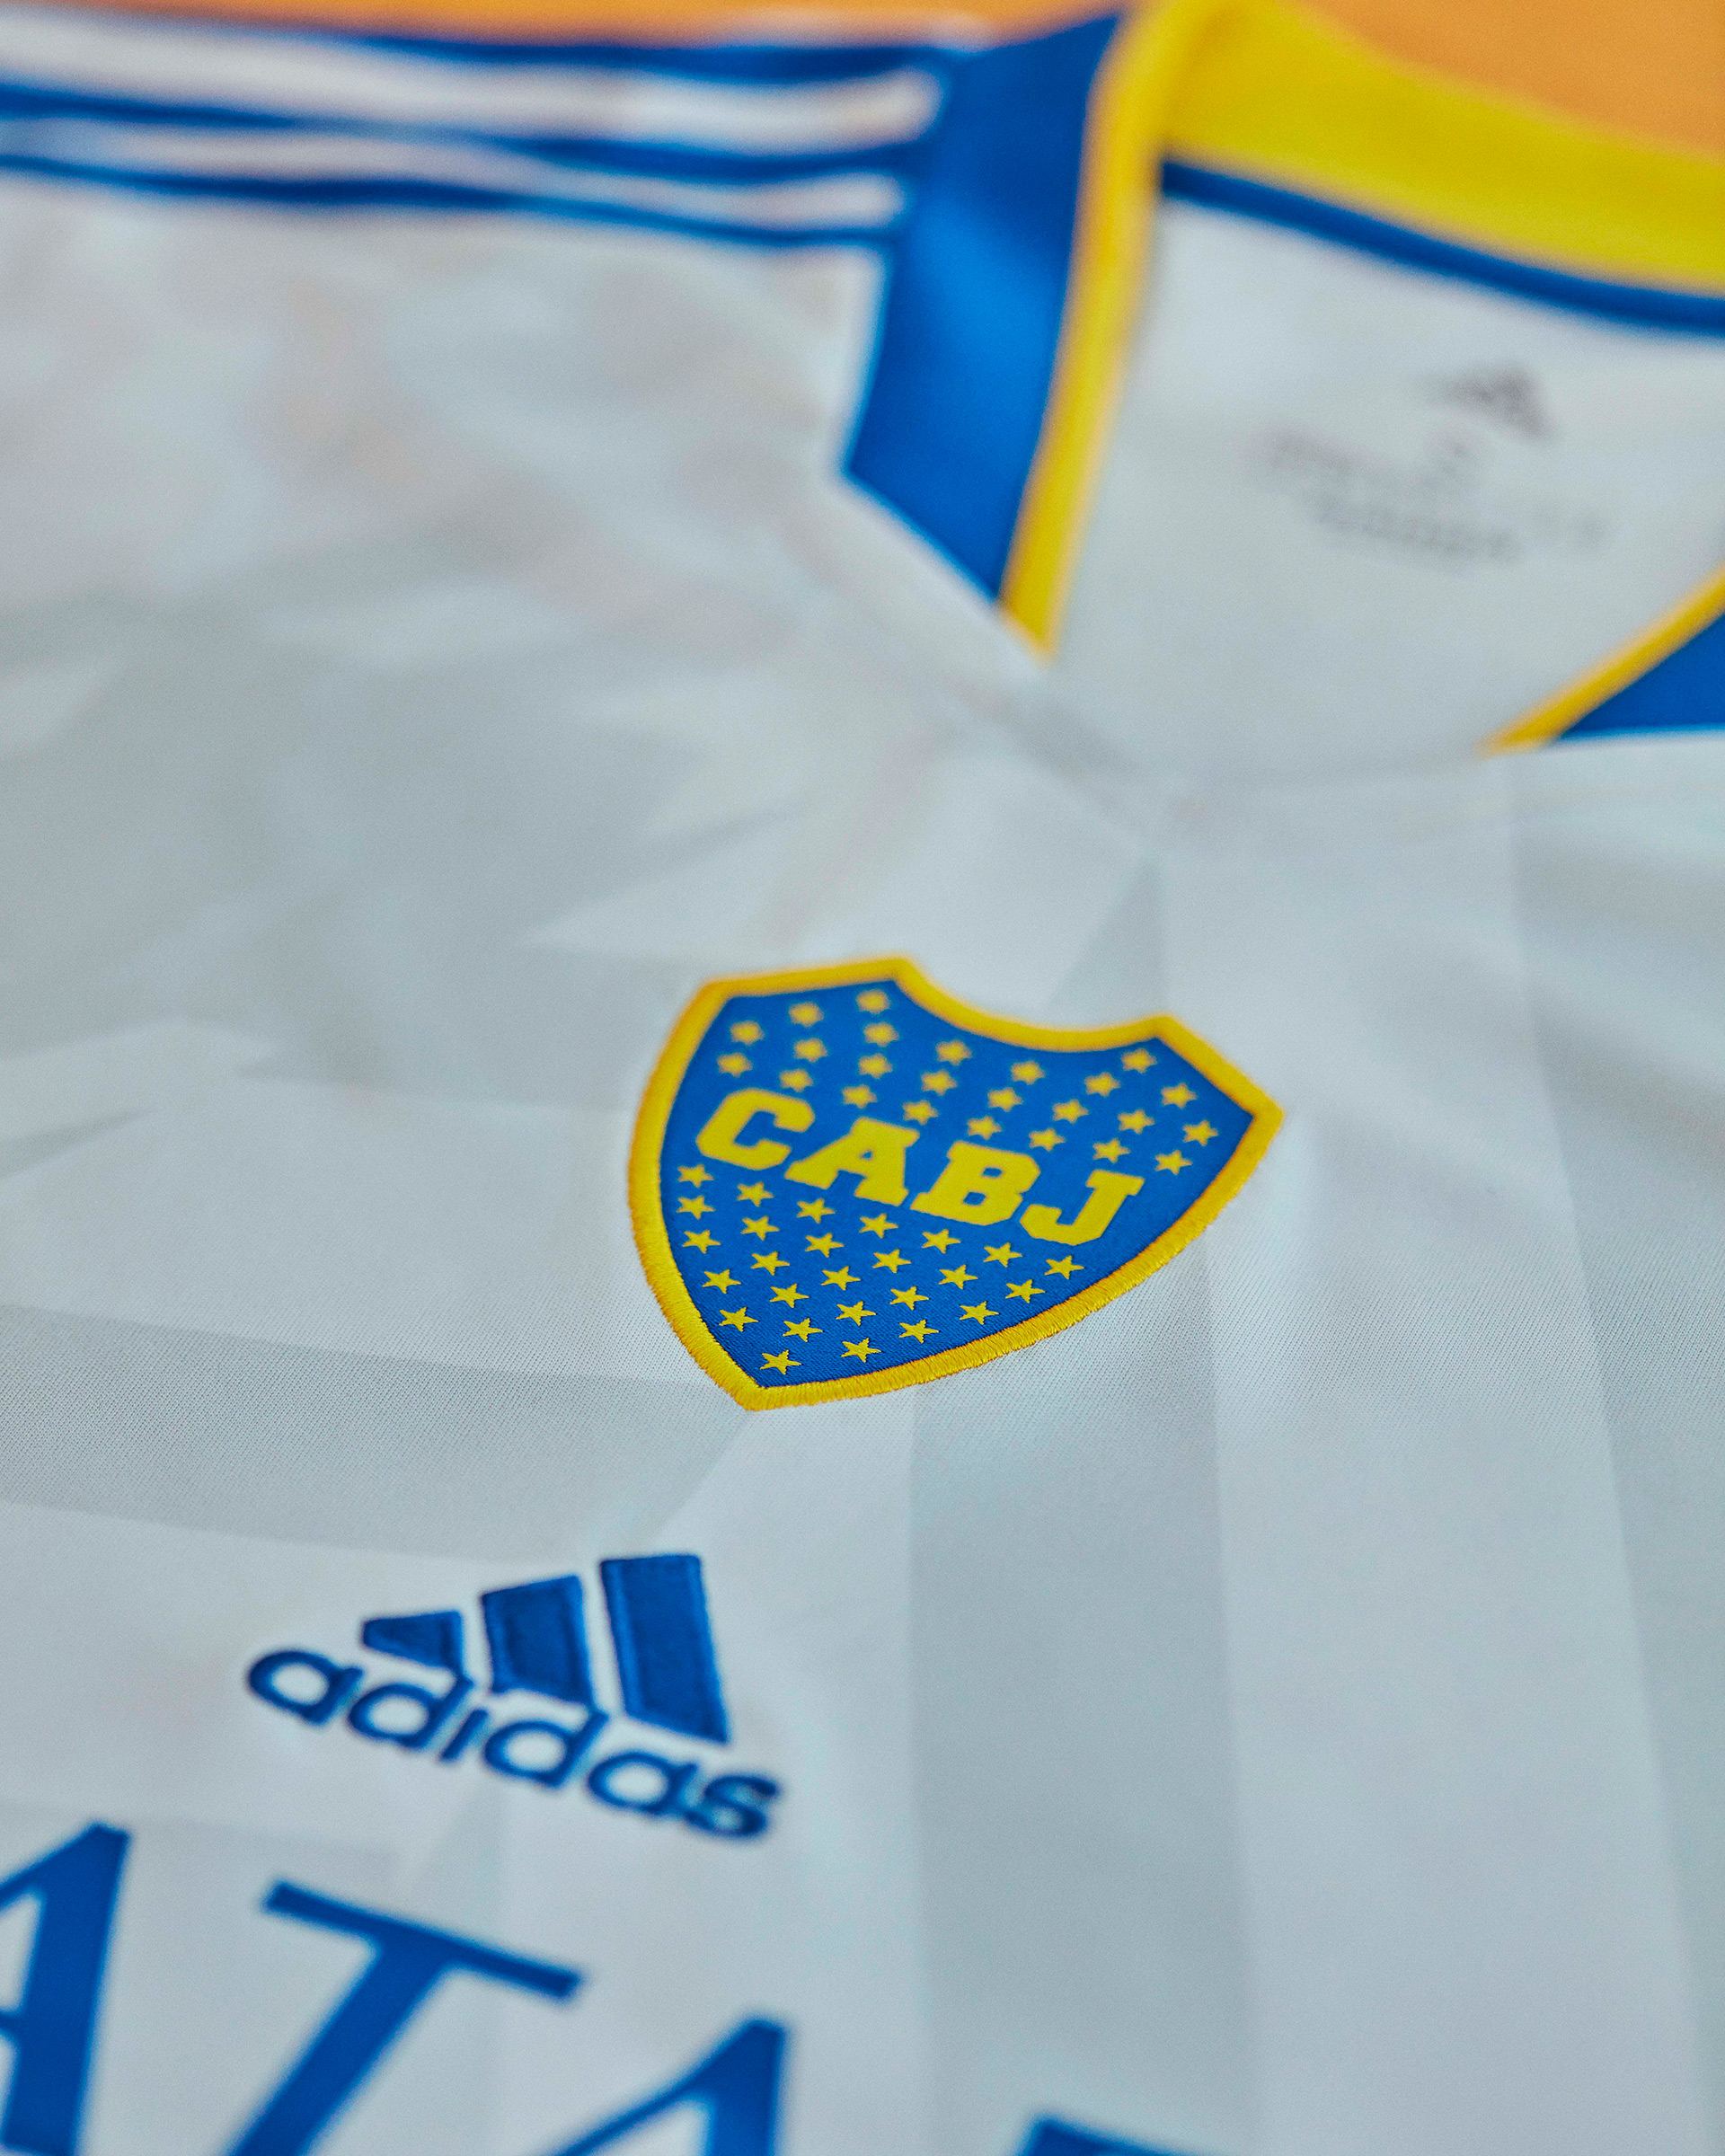 Inspirada en la que usó el primer equipo campeón del mundo, Boca presentó una nueva camiseta suplente con una novedad del escudo (Foto: Adidas)